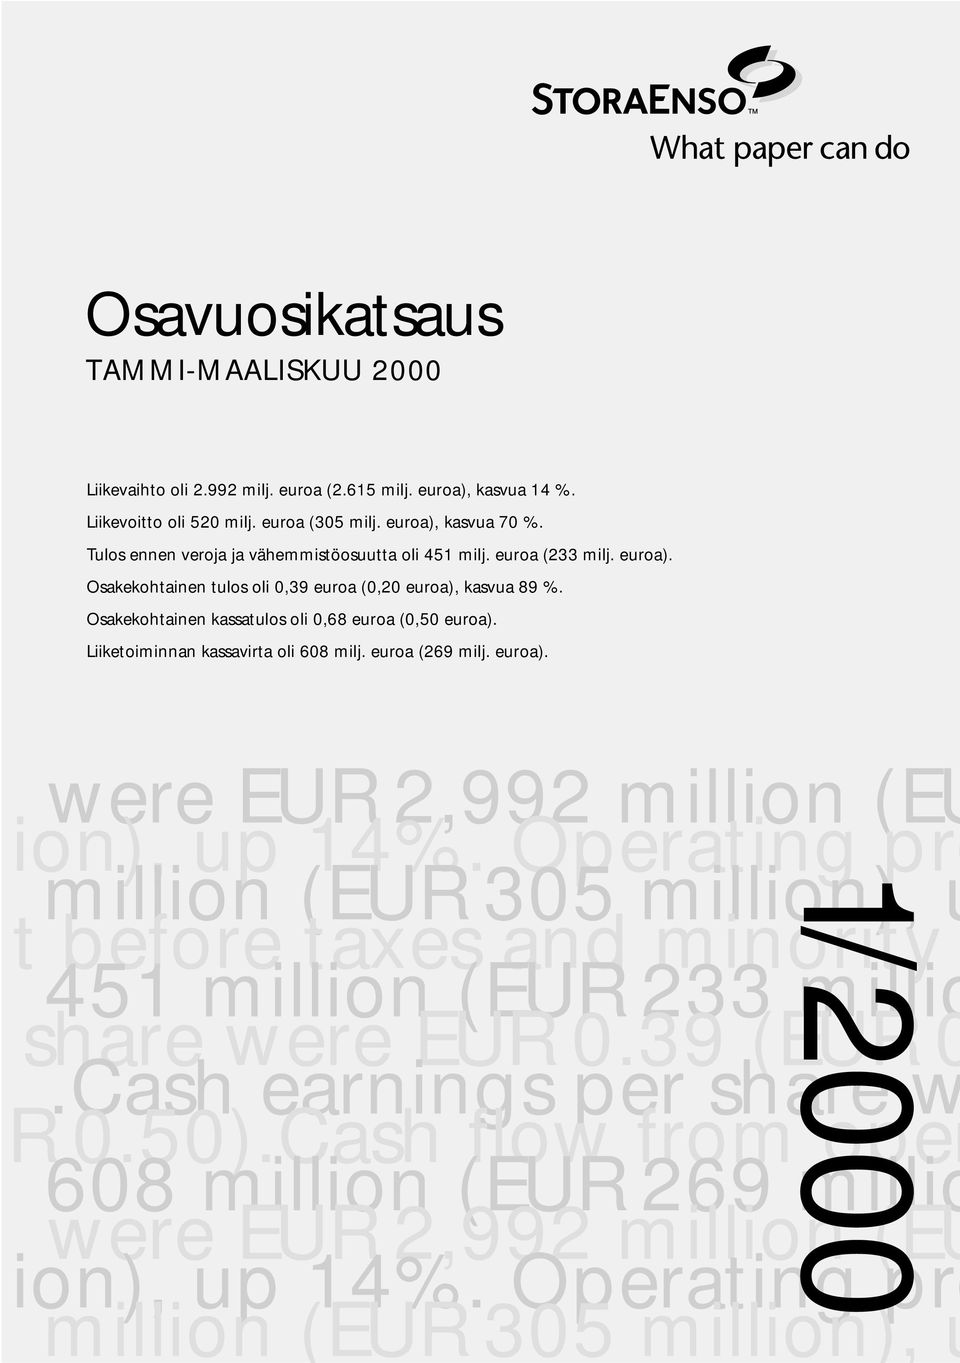 Osakekohtainen kassatulos oli 0,68 euroa (0,50 euroa). Liiketoiminnan kassavirta oli 608 milj. euroa (269 milj. euroa). were EUR 2,992 million (EU ion), up 14%.